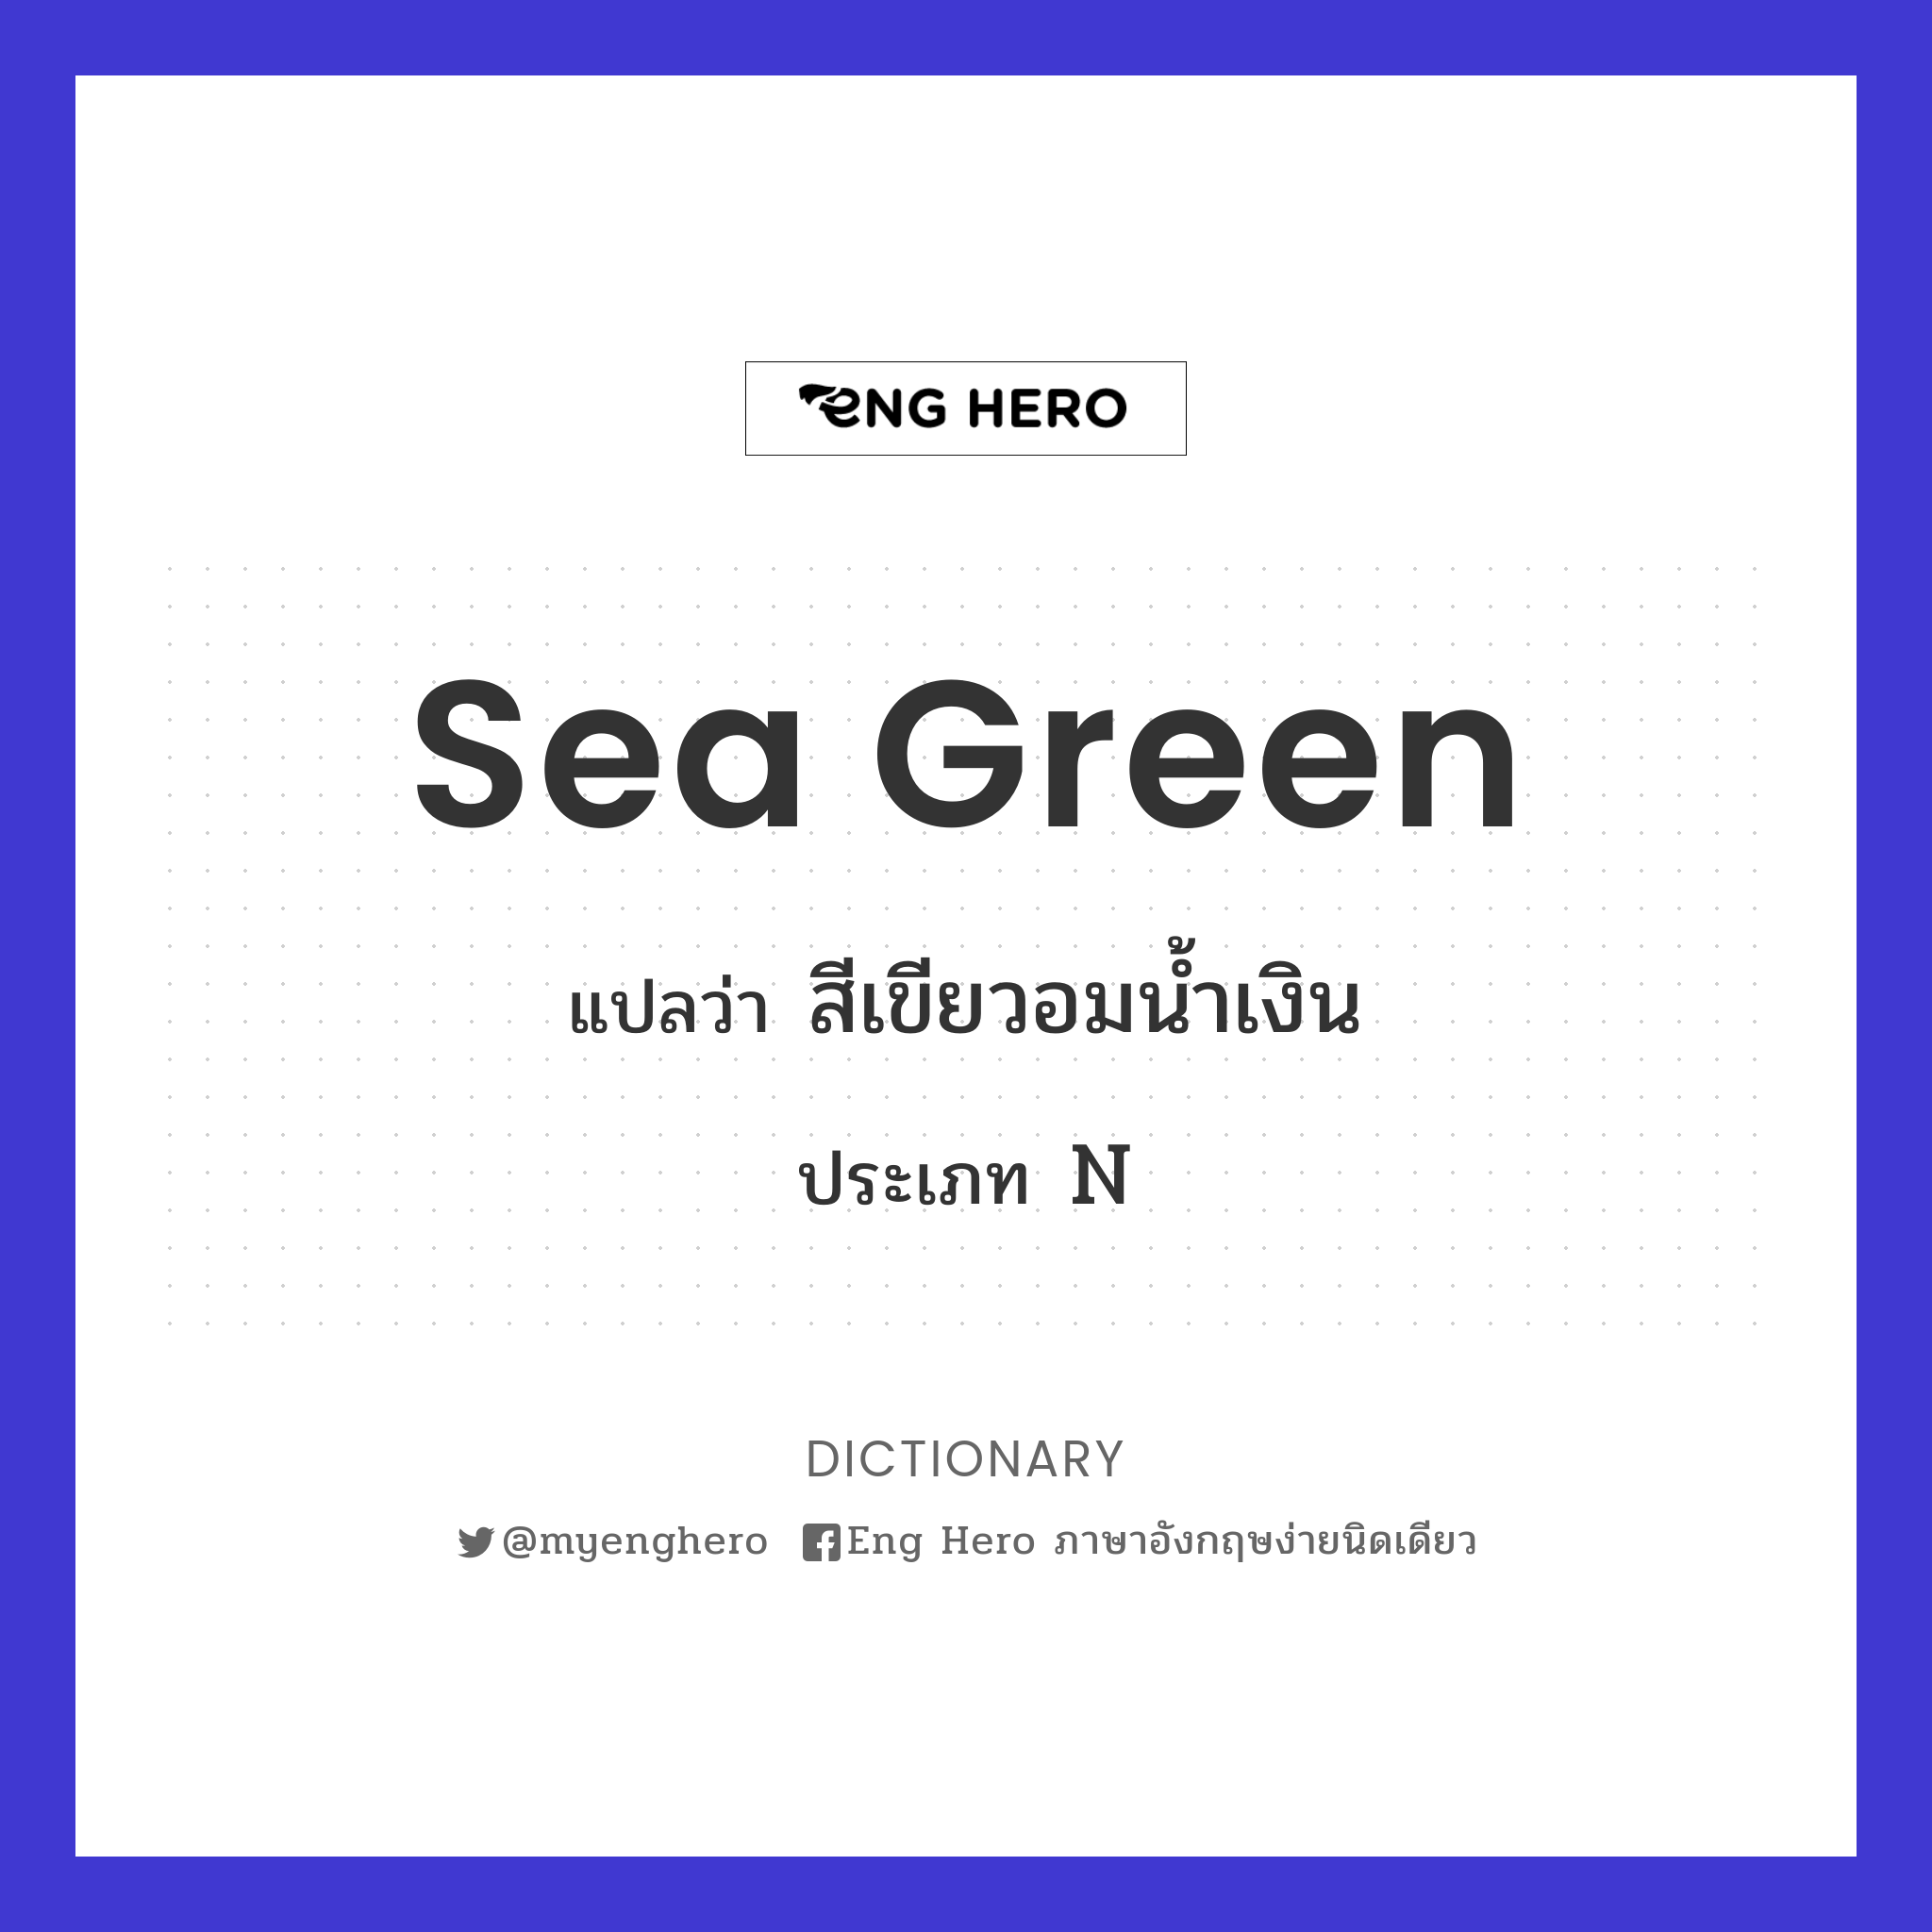 sea green